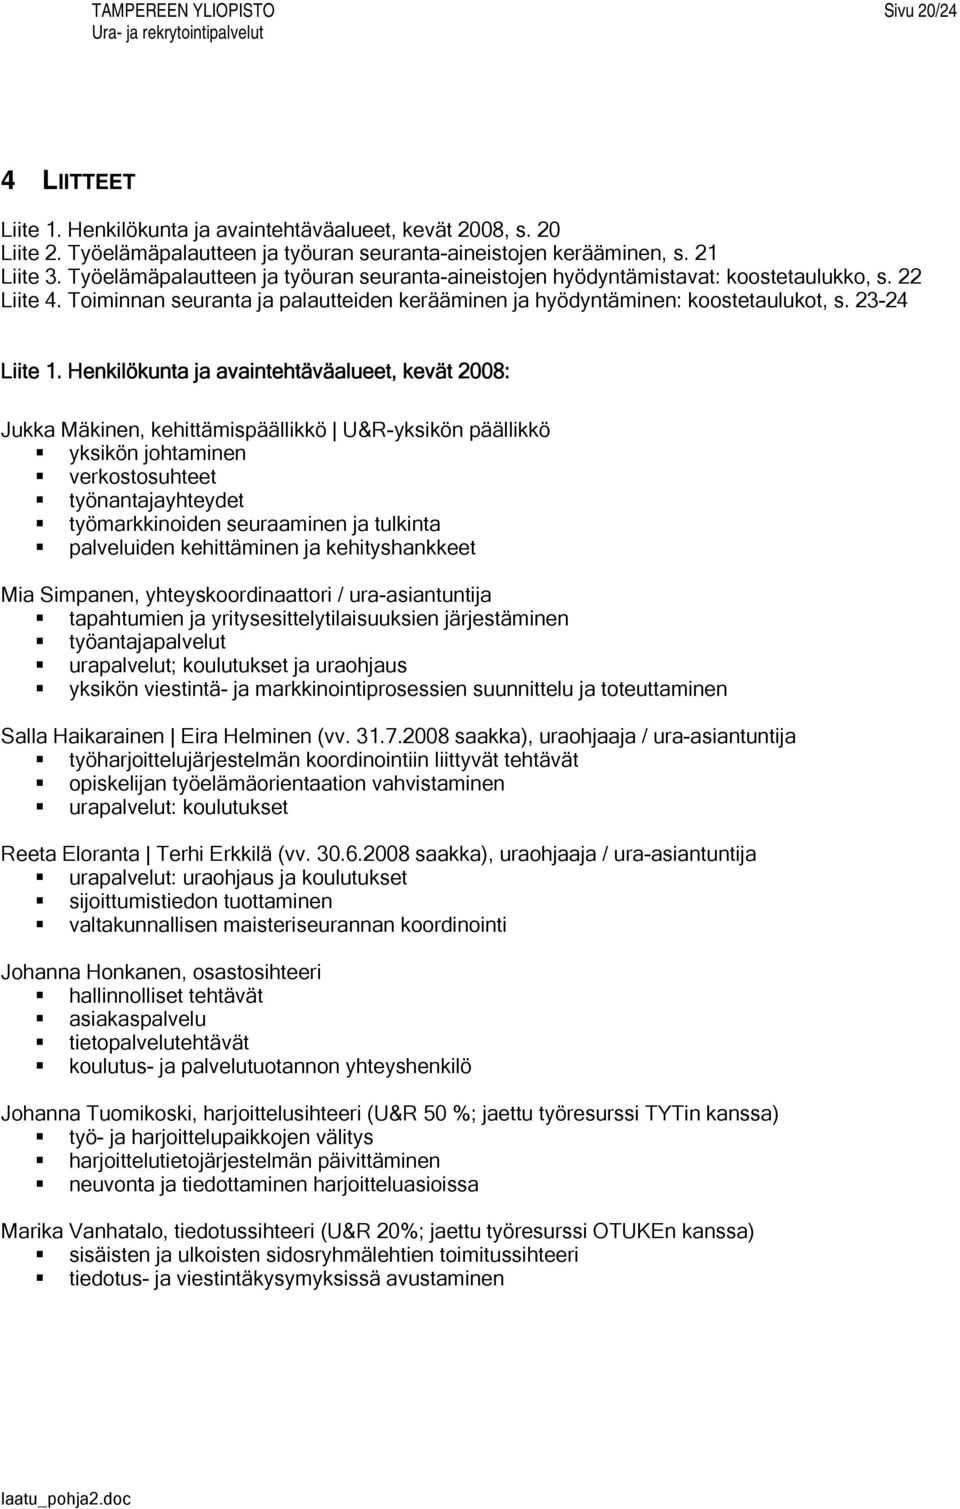 Henkilökunta ja avaintehtäväalueet, kevät 2008: Jukka Mäkinen, kehittämispäällikkö U&R-yksikön päällikkö yksikön johtaminen verkostosuhteet työnantajayhteydet työmarkkinoiden seuraaminen ja tulkinta